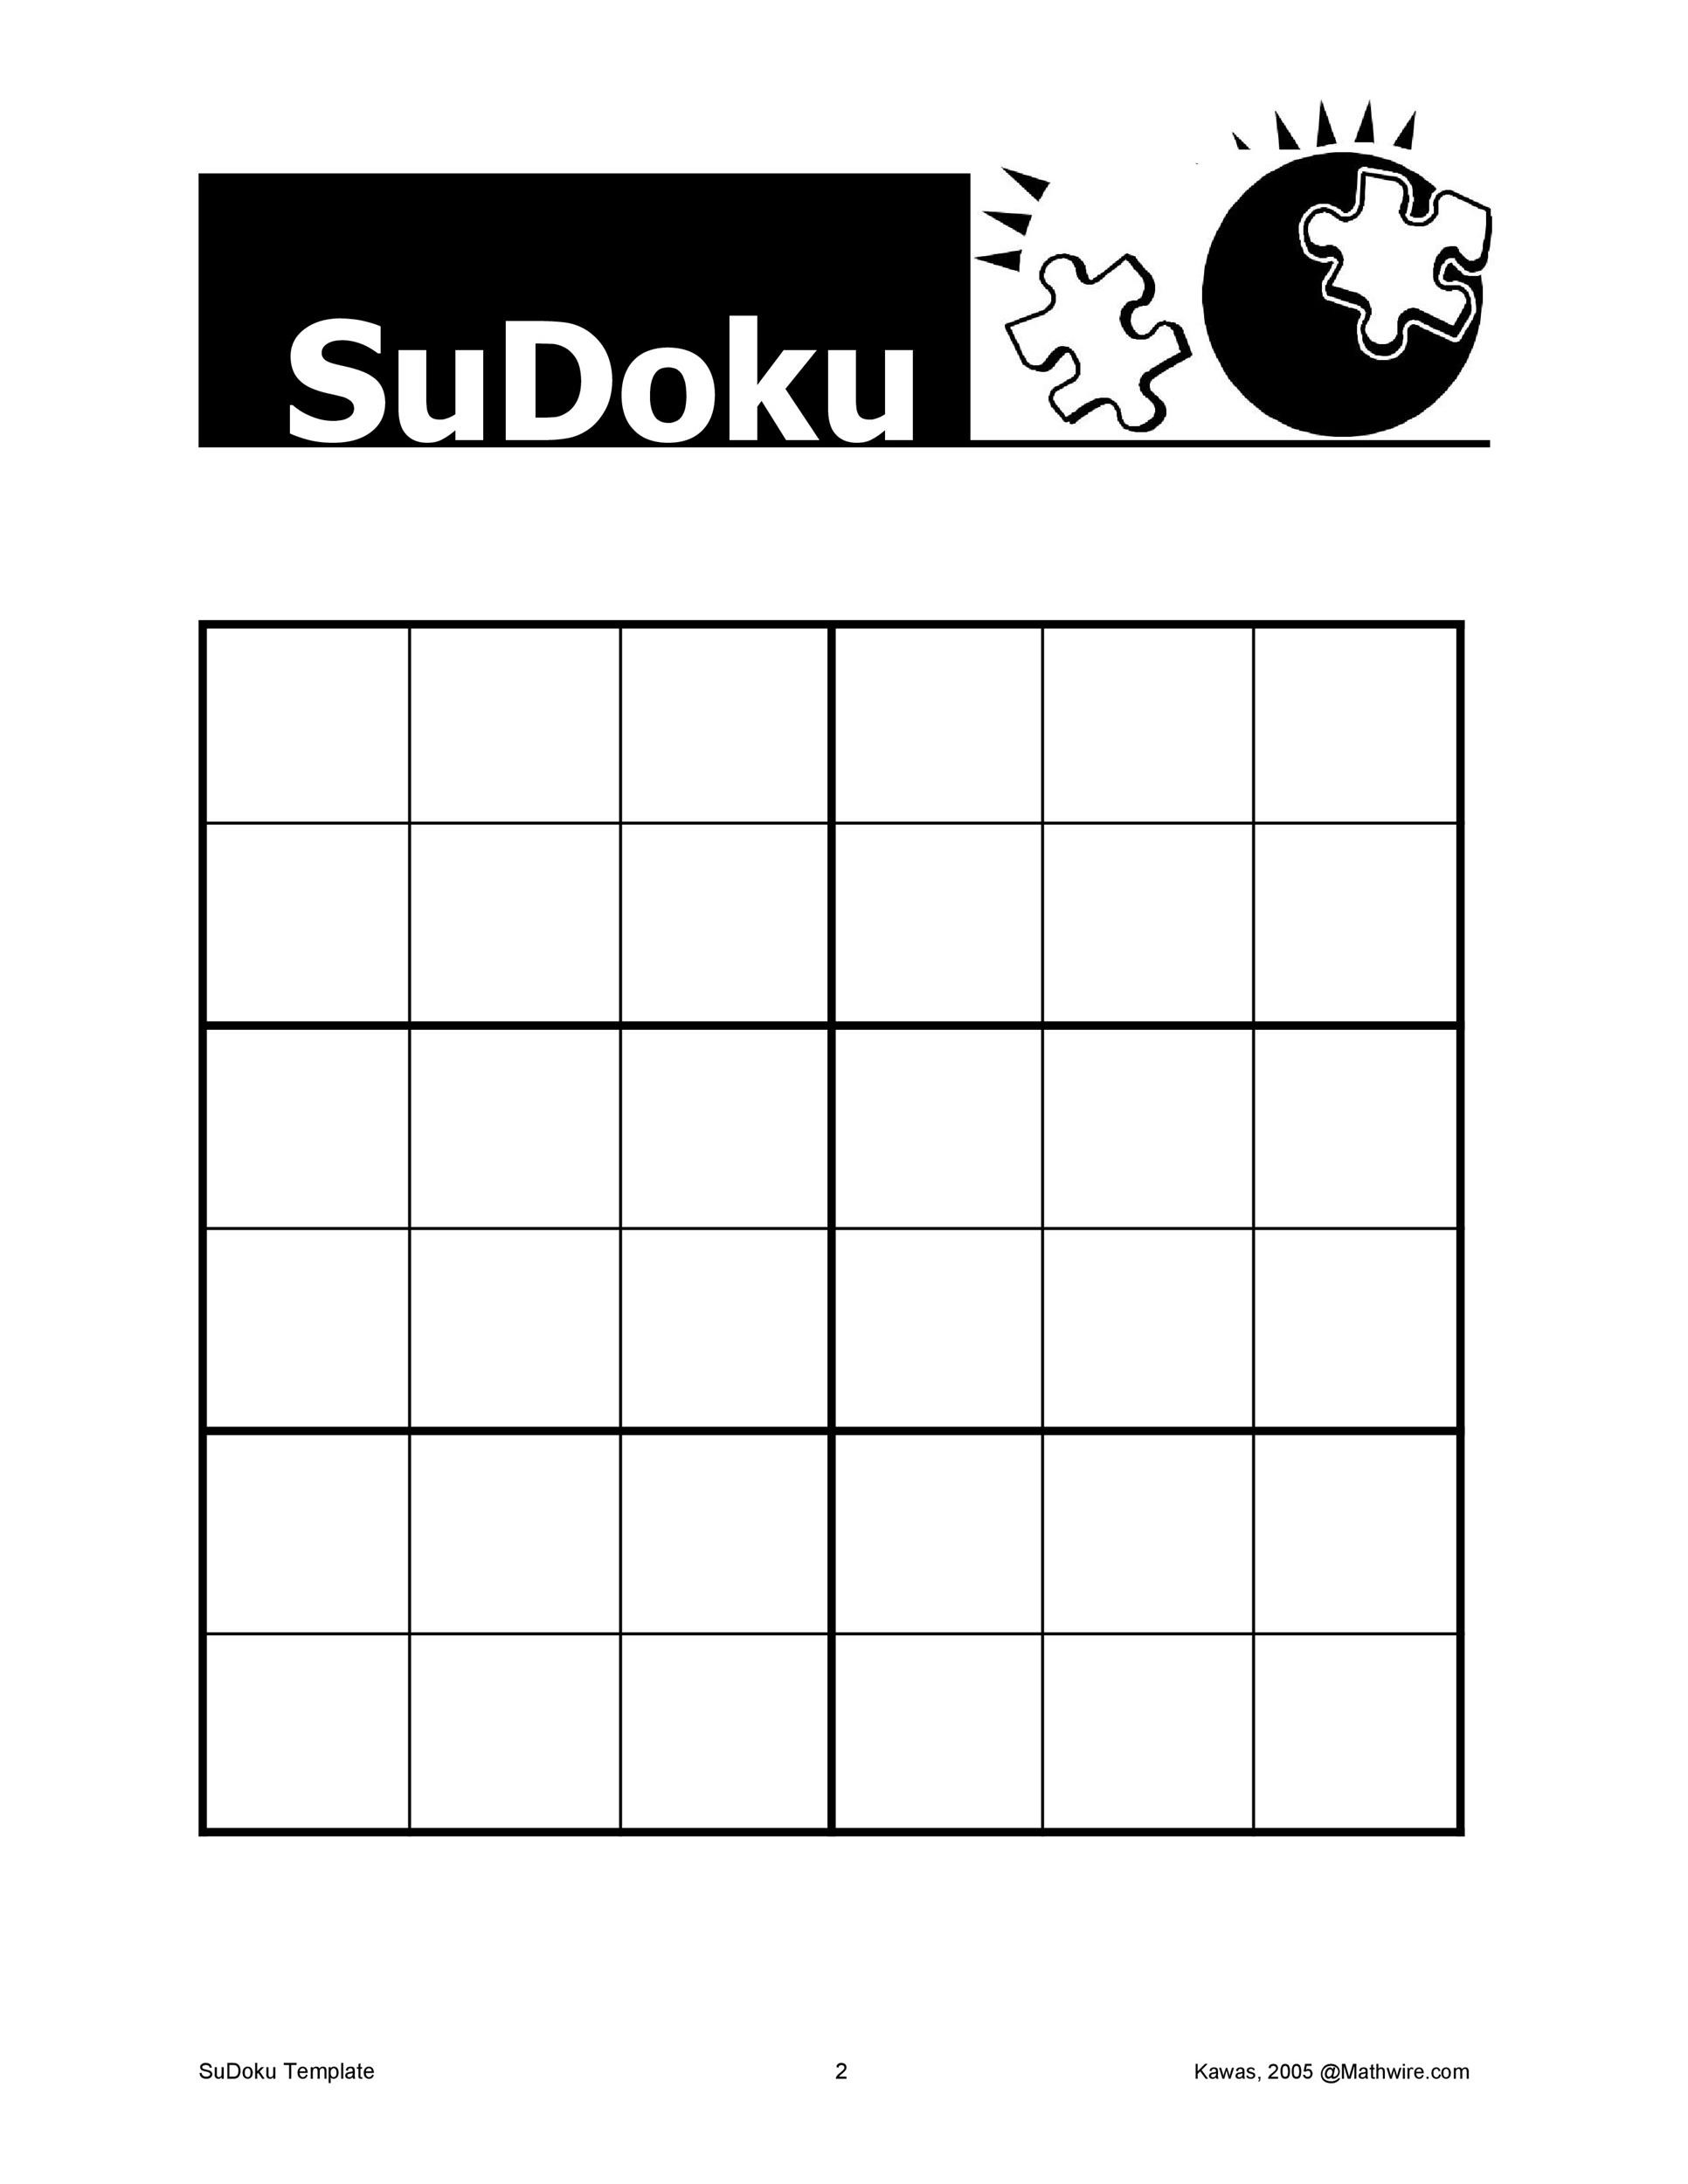 sudoku-blank-grid-printable-customize-and-print